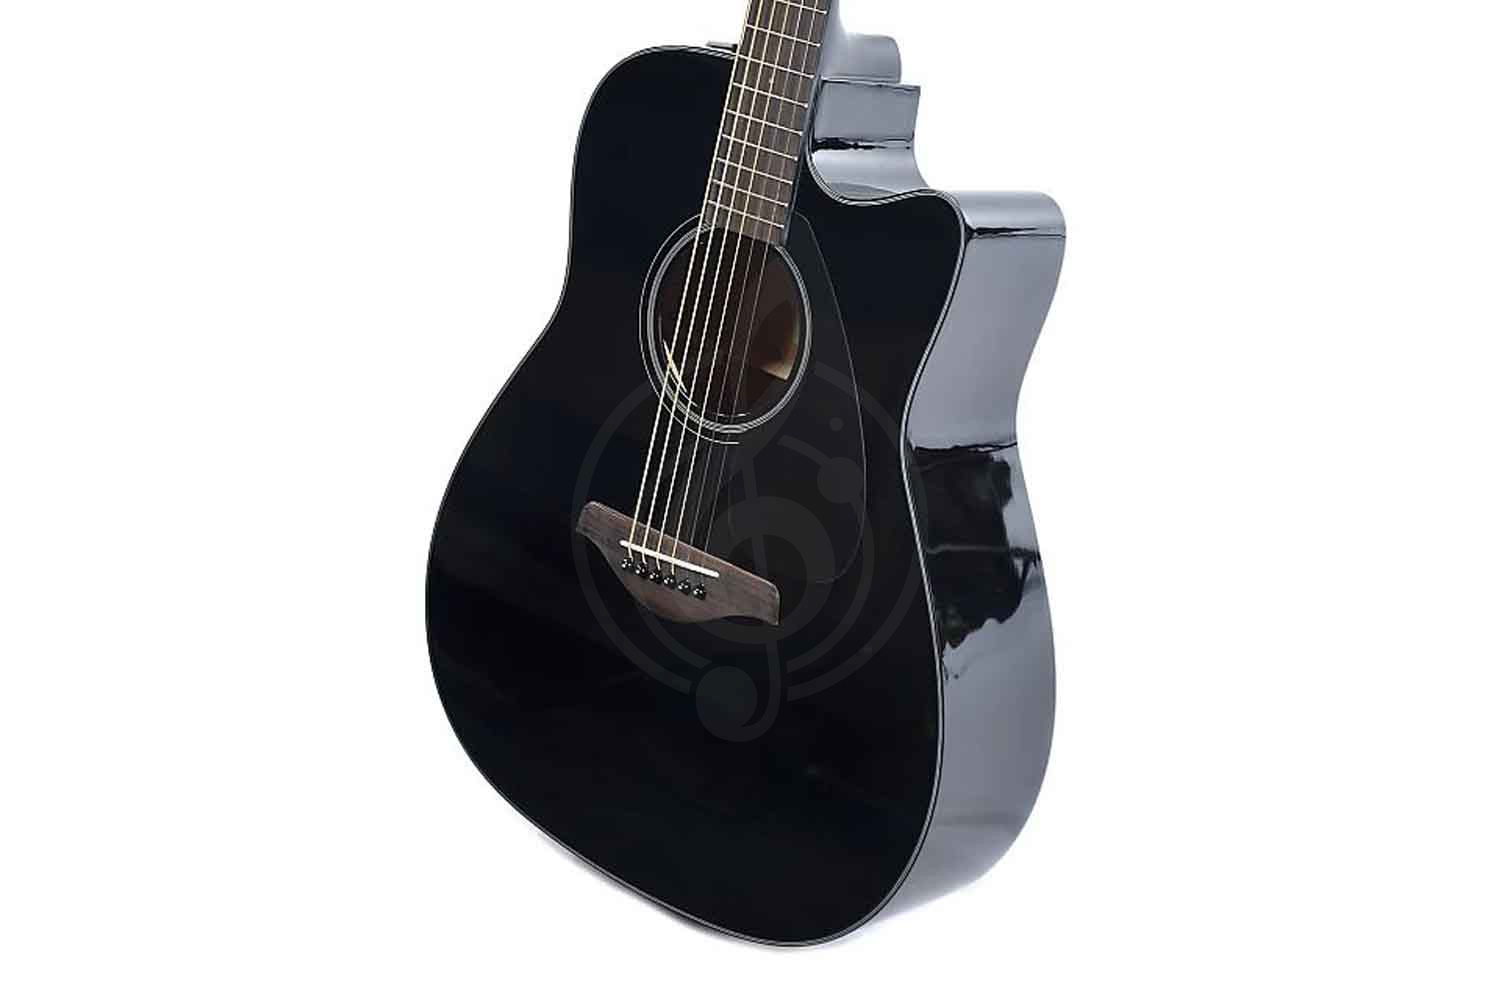 Электроакустическая гитара Электроакустические гитары Yamaha Yamaha FGX800C BL- электроакустическая гитара FGX800C BLACK//02 - фото 2